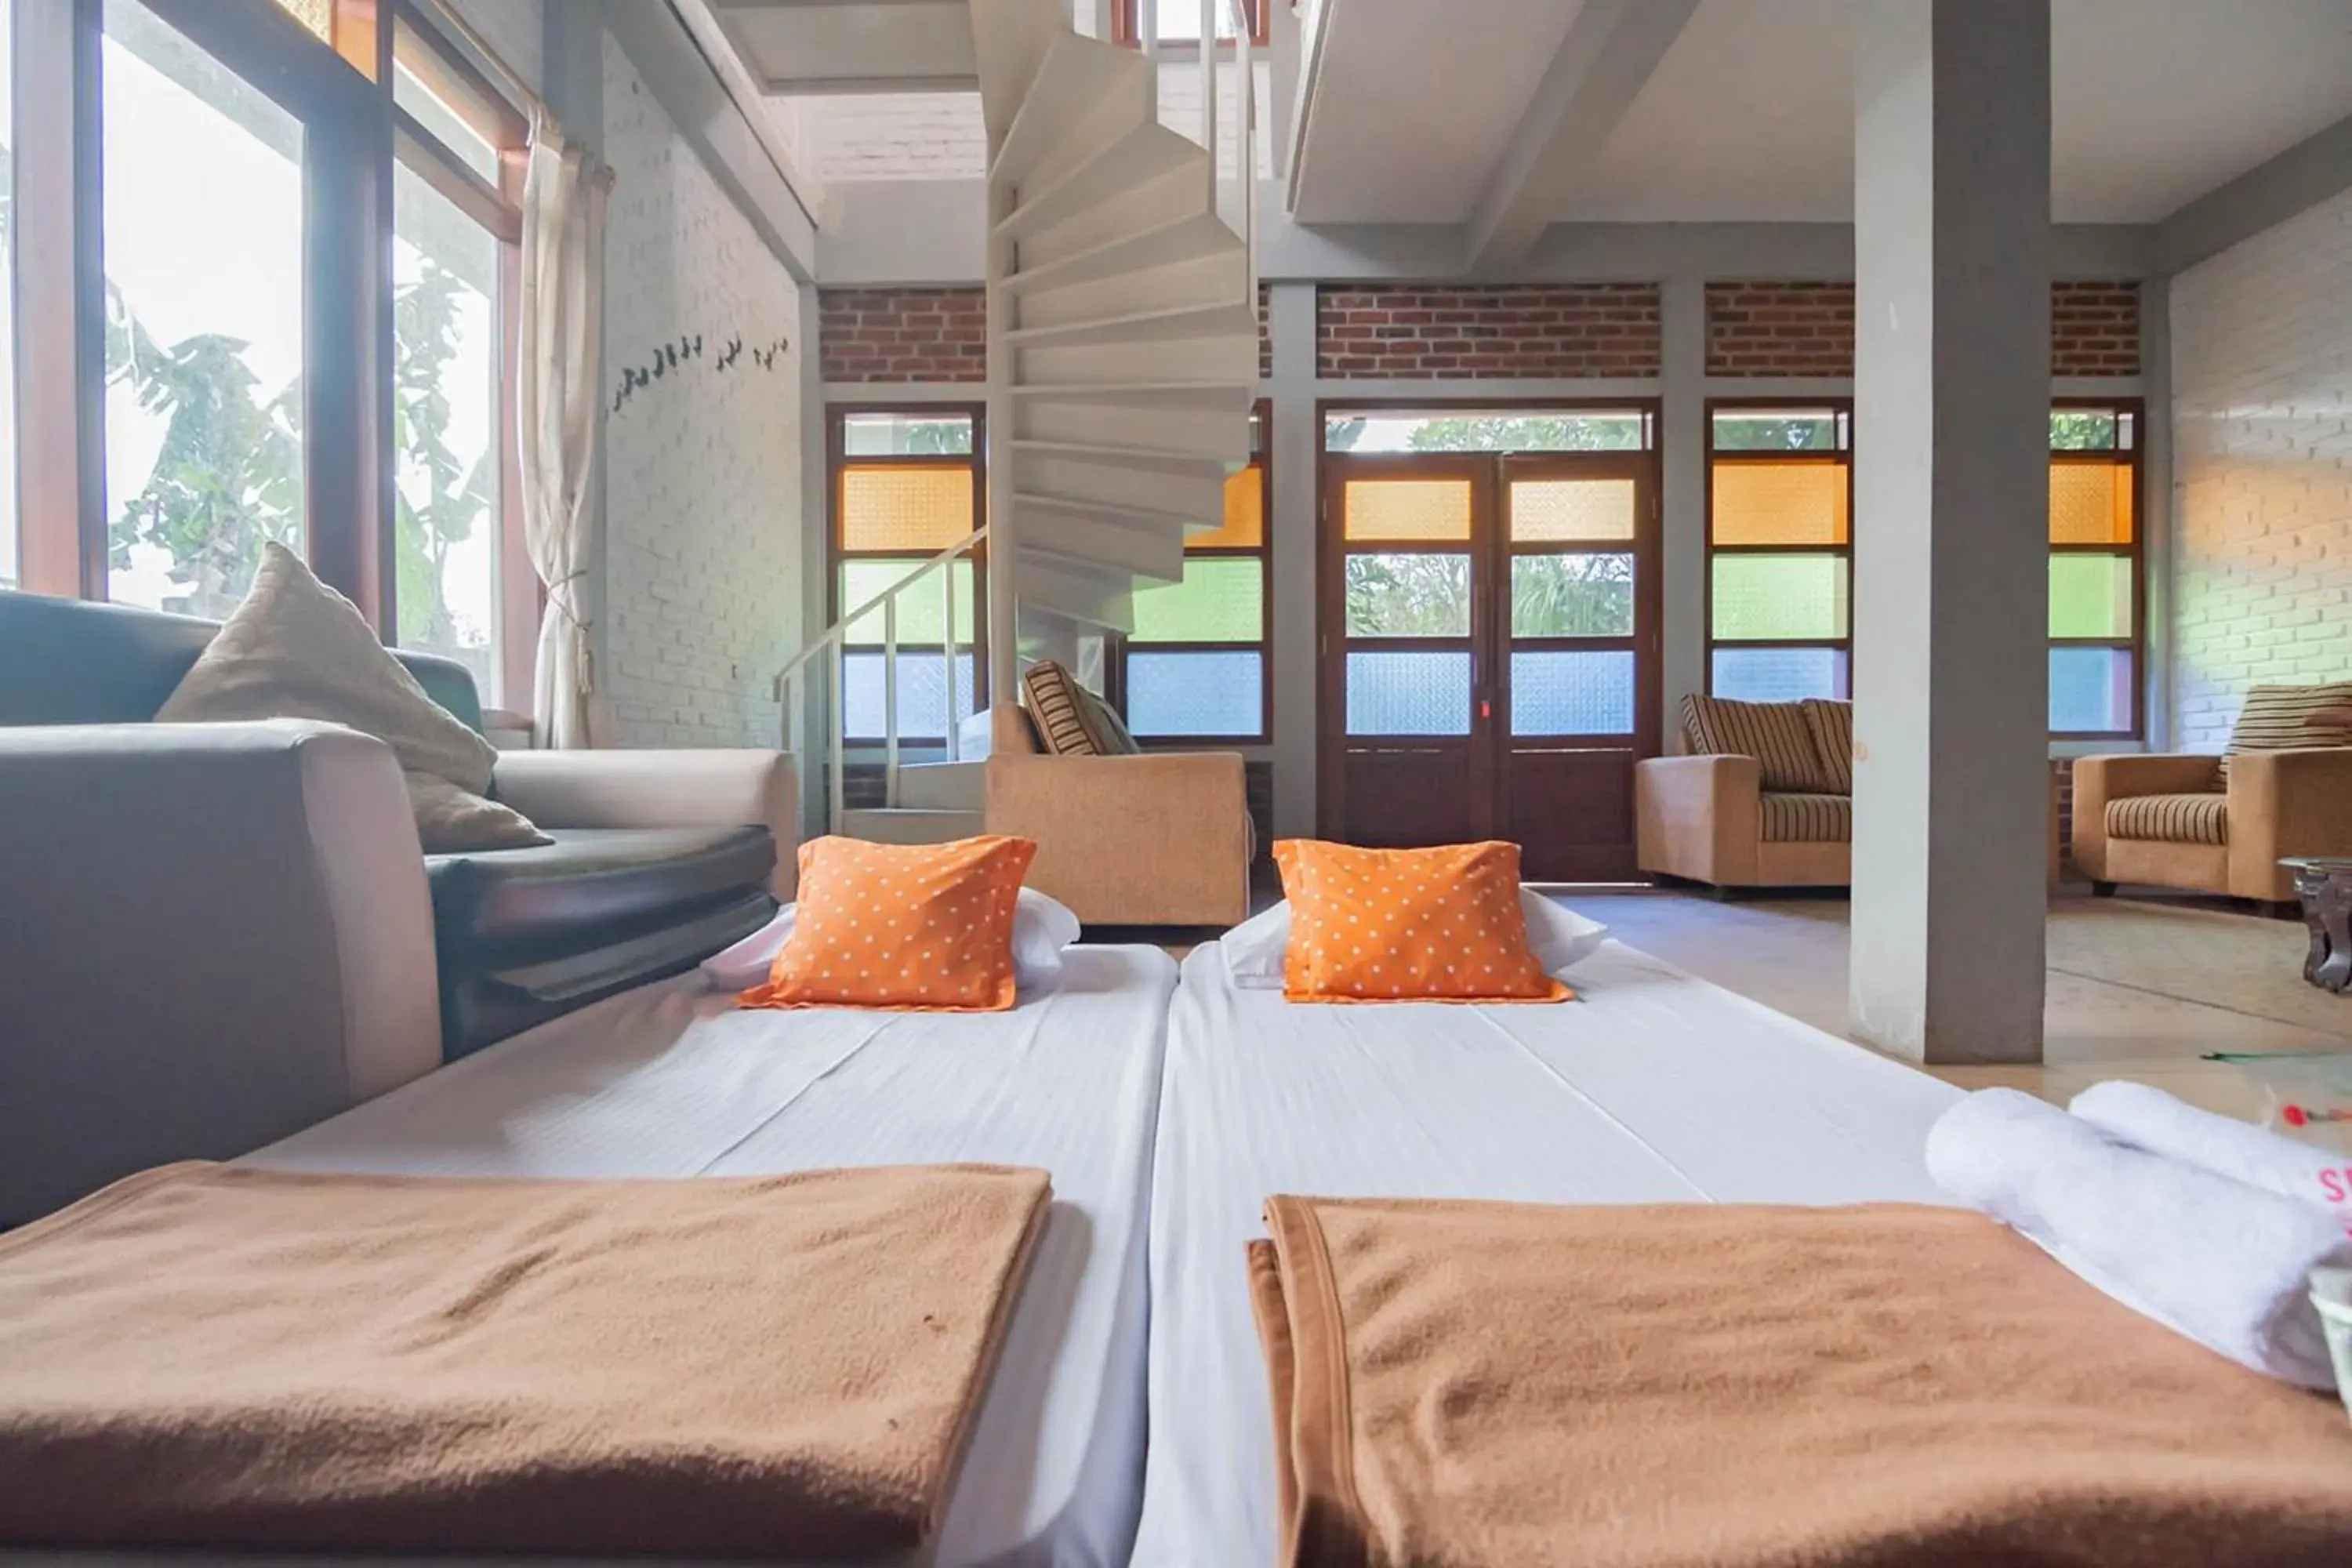 Bedroom, Bed in RedDoorz near Kampung Gajah 2